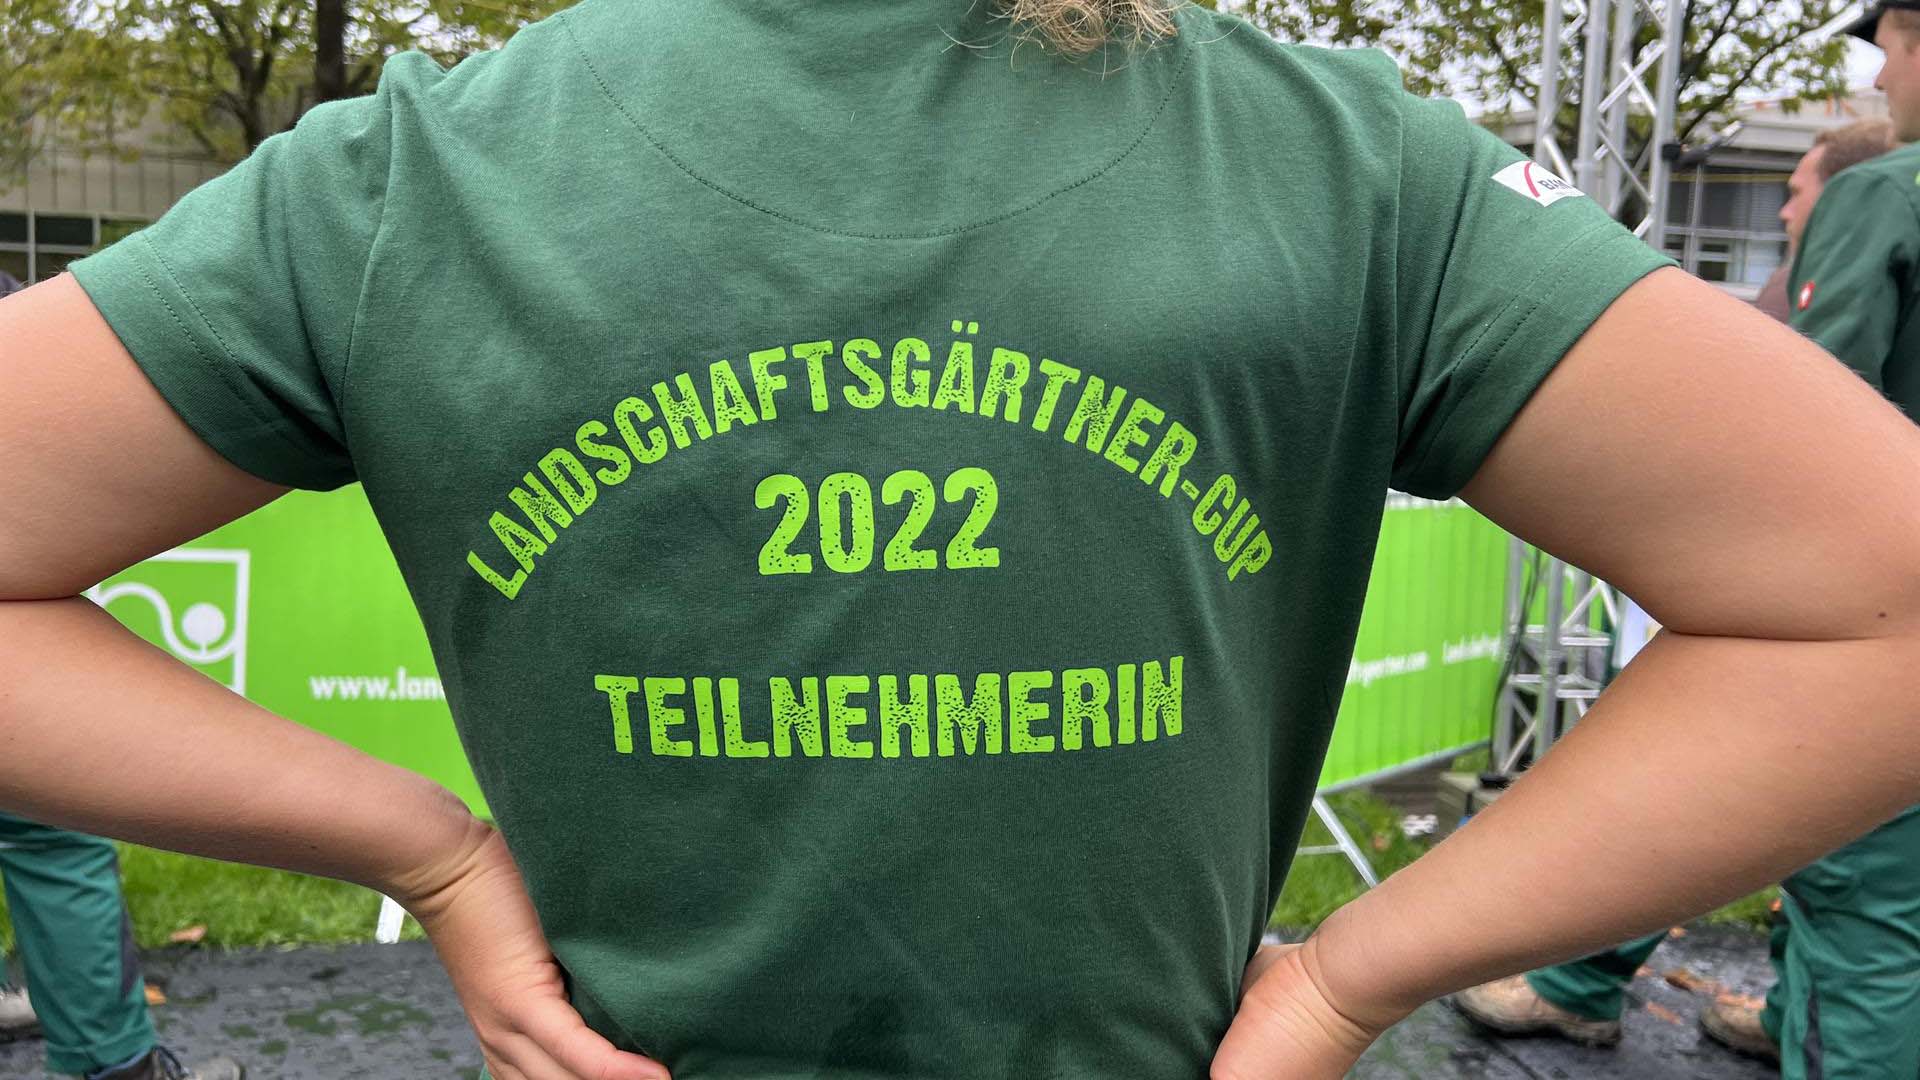 Landschaftsgärtner-Cup 2022: ob Teilnehmerinnen oder Teilnehmer, endlich geht es los